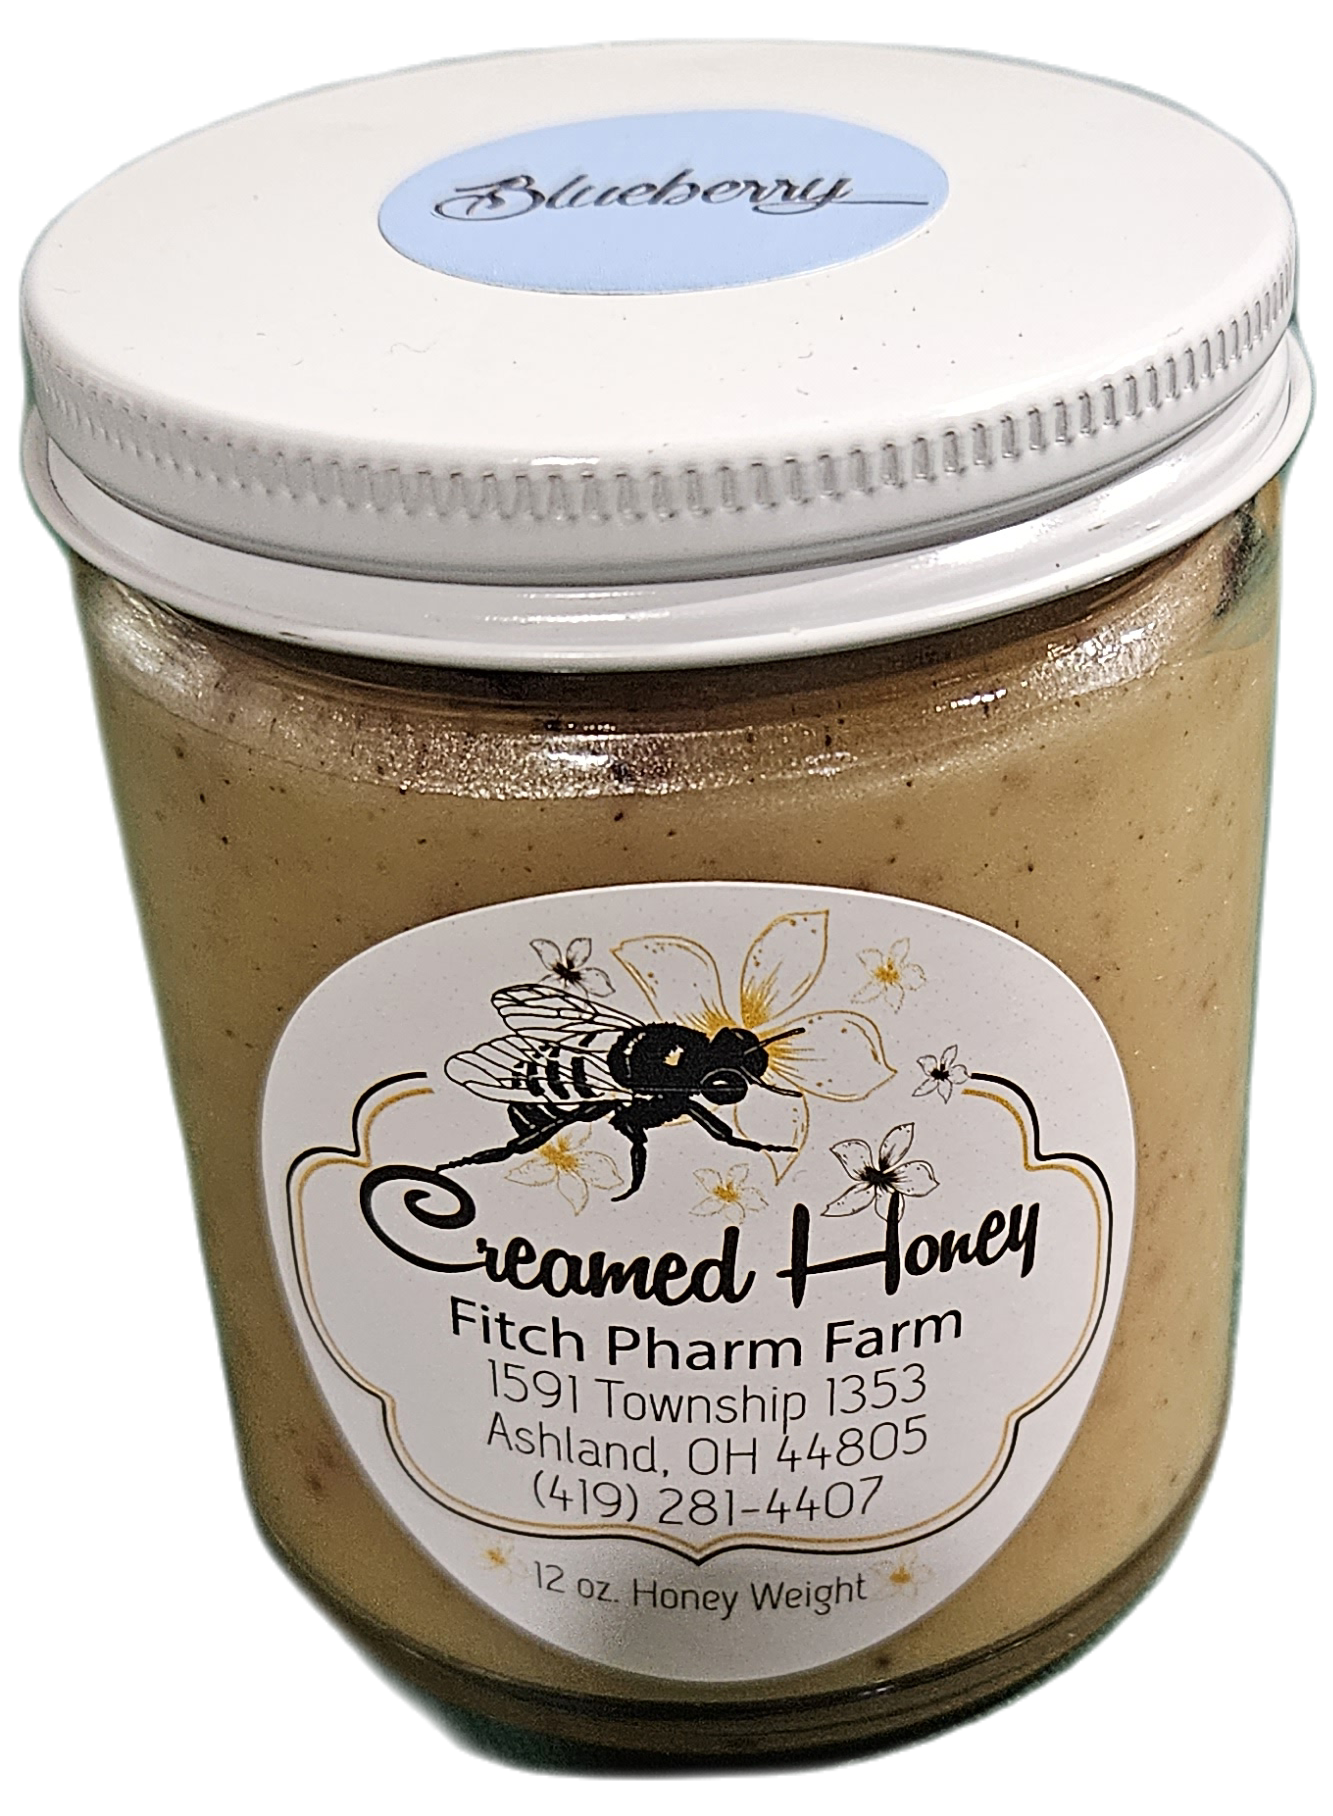 Creamed Honey Blueberry